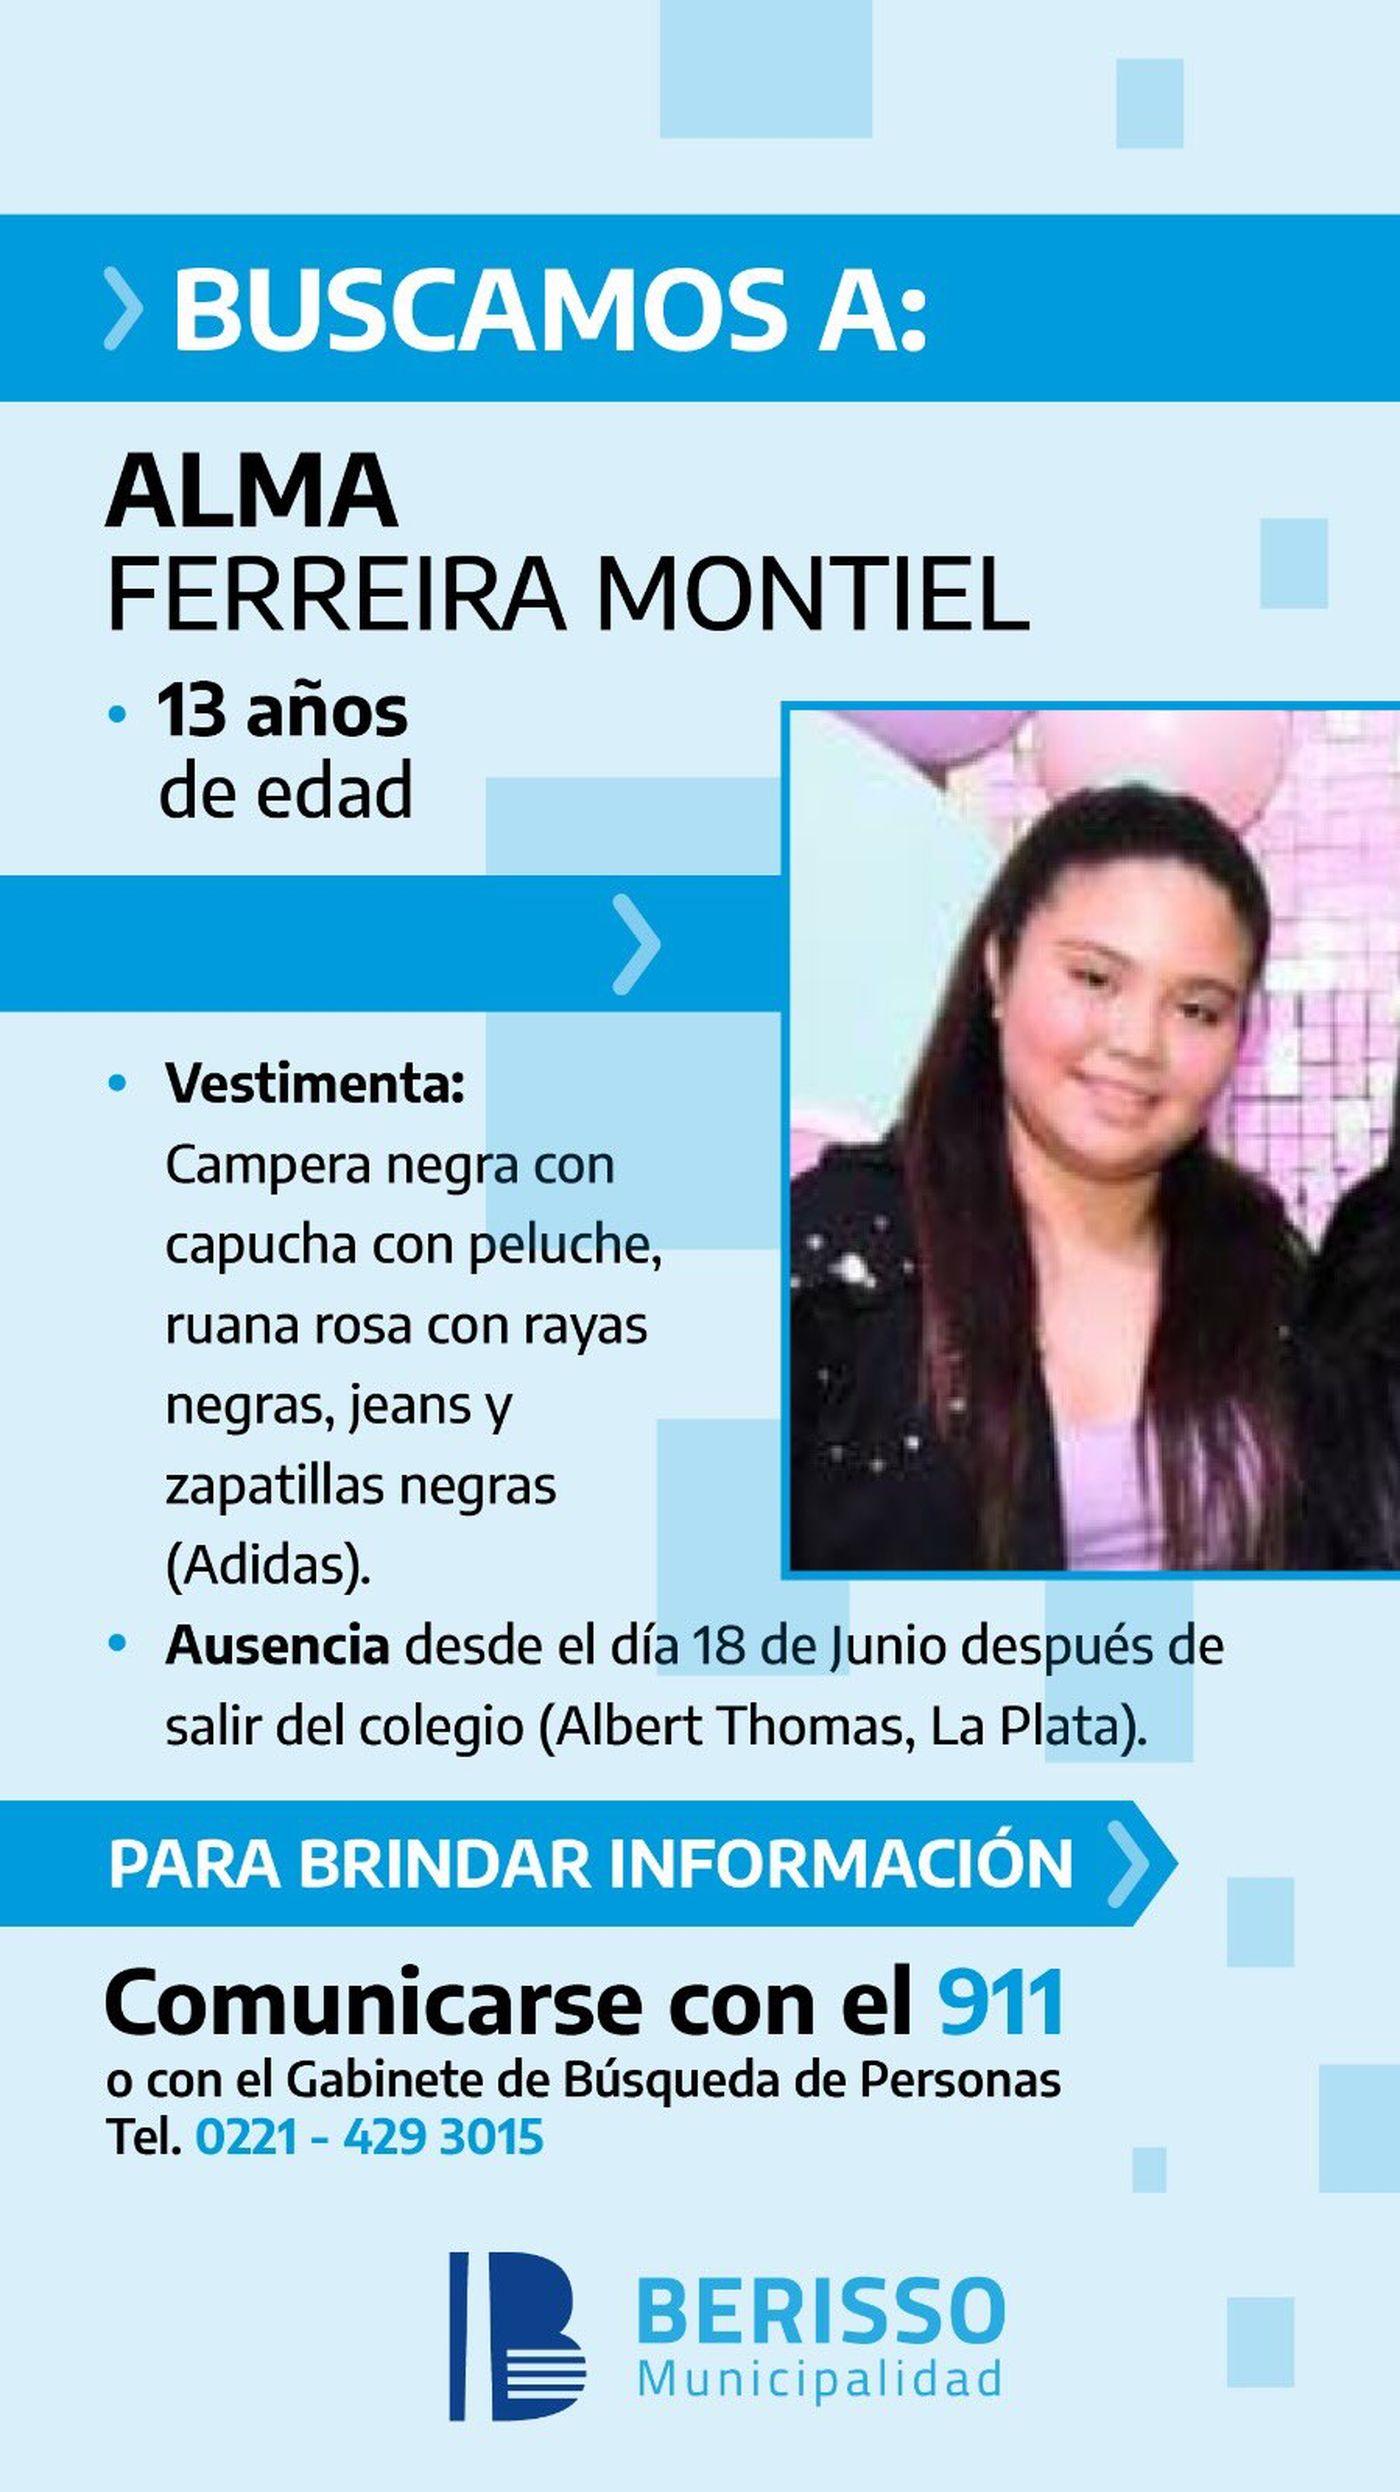 La Municipalidad de Berisso compartió datos para ayudar en la búsqueda de la adolescente.